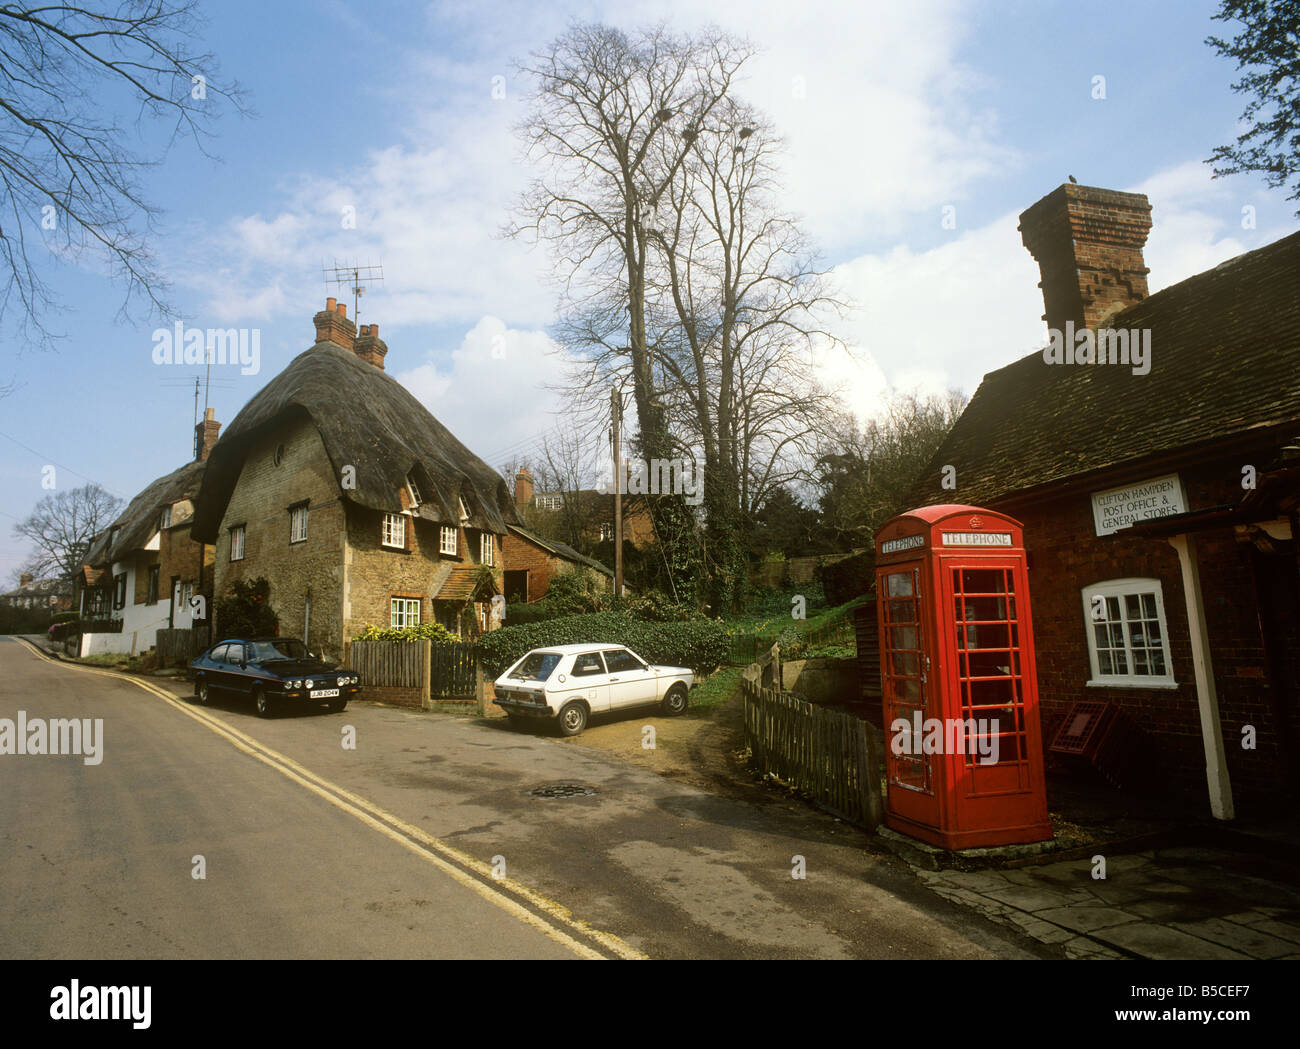 UK England Oxfordshire Clifton Hampden village Stock Photo